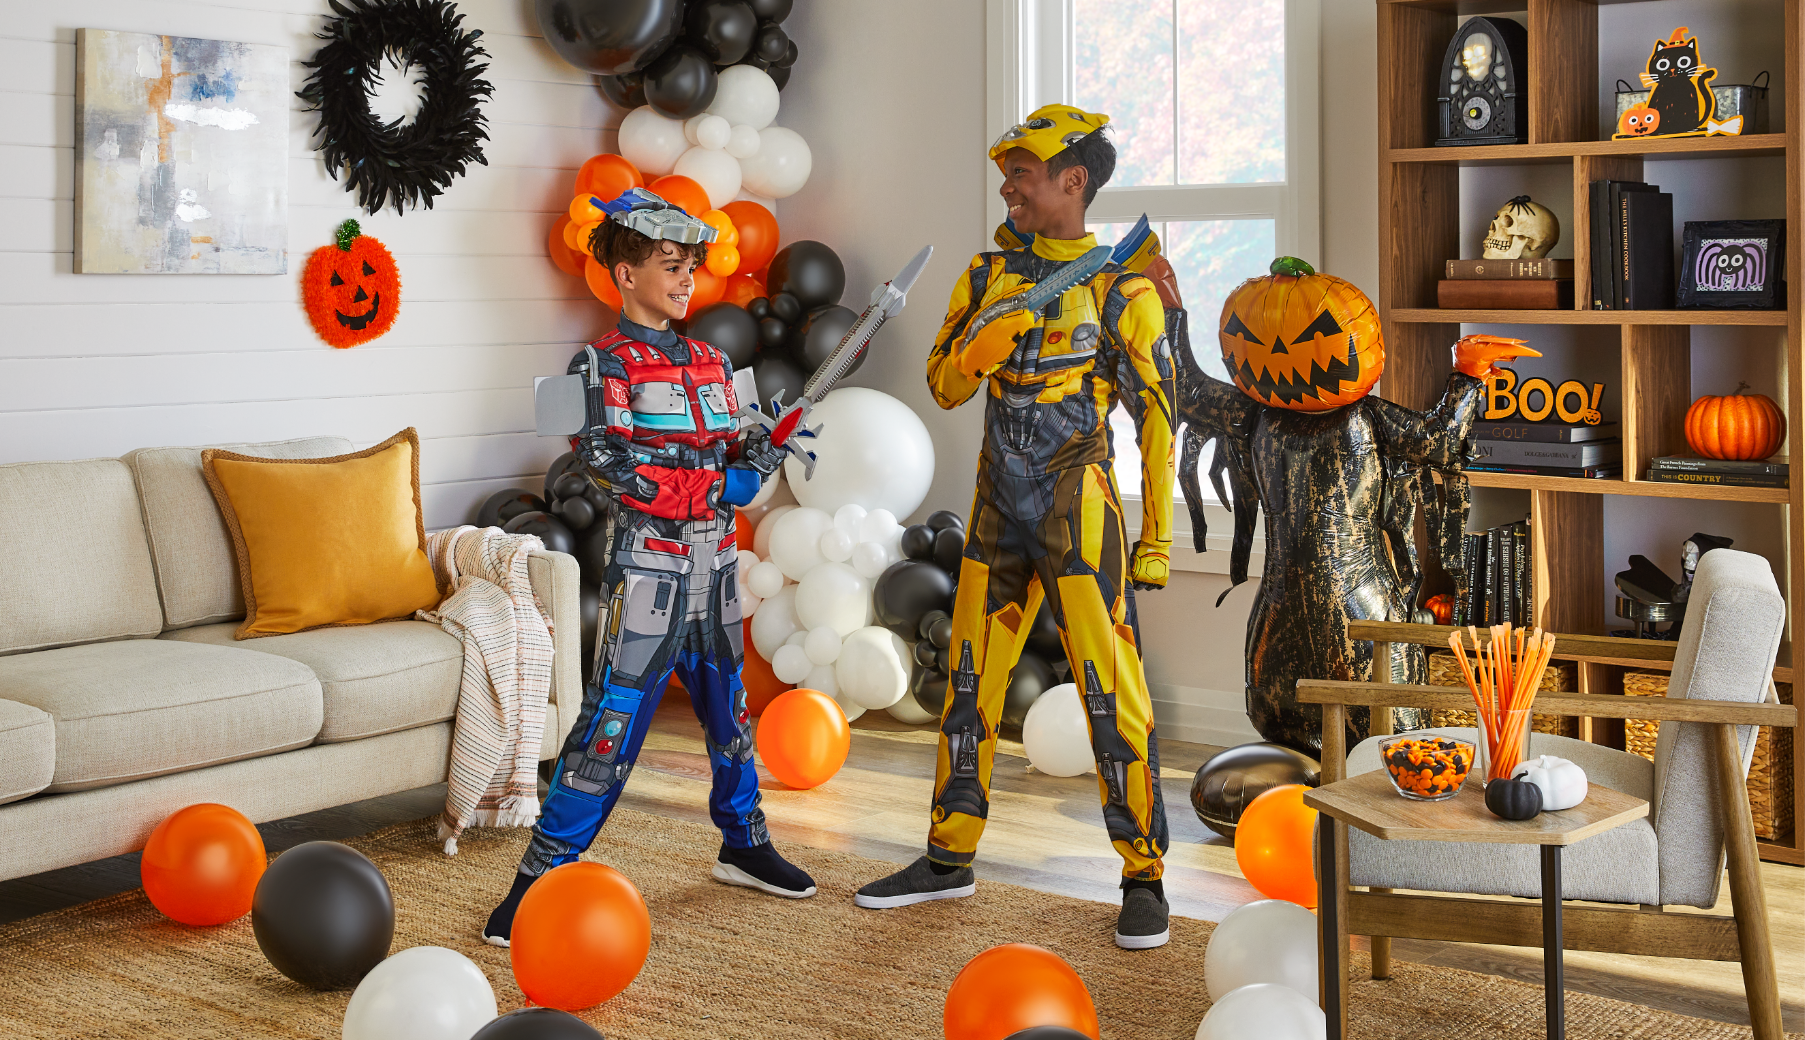 Deux enfants portant des costumes Transformers dans une pièce remplie de ballons et décorations d’Halloween.